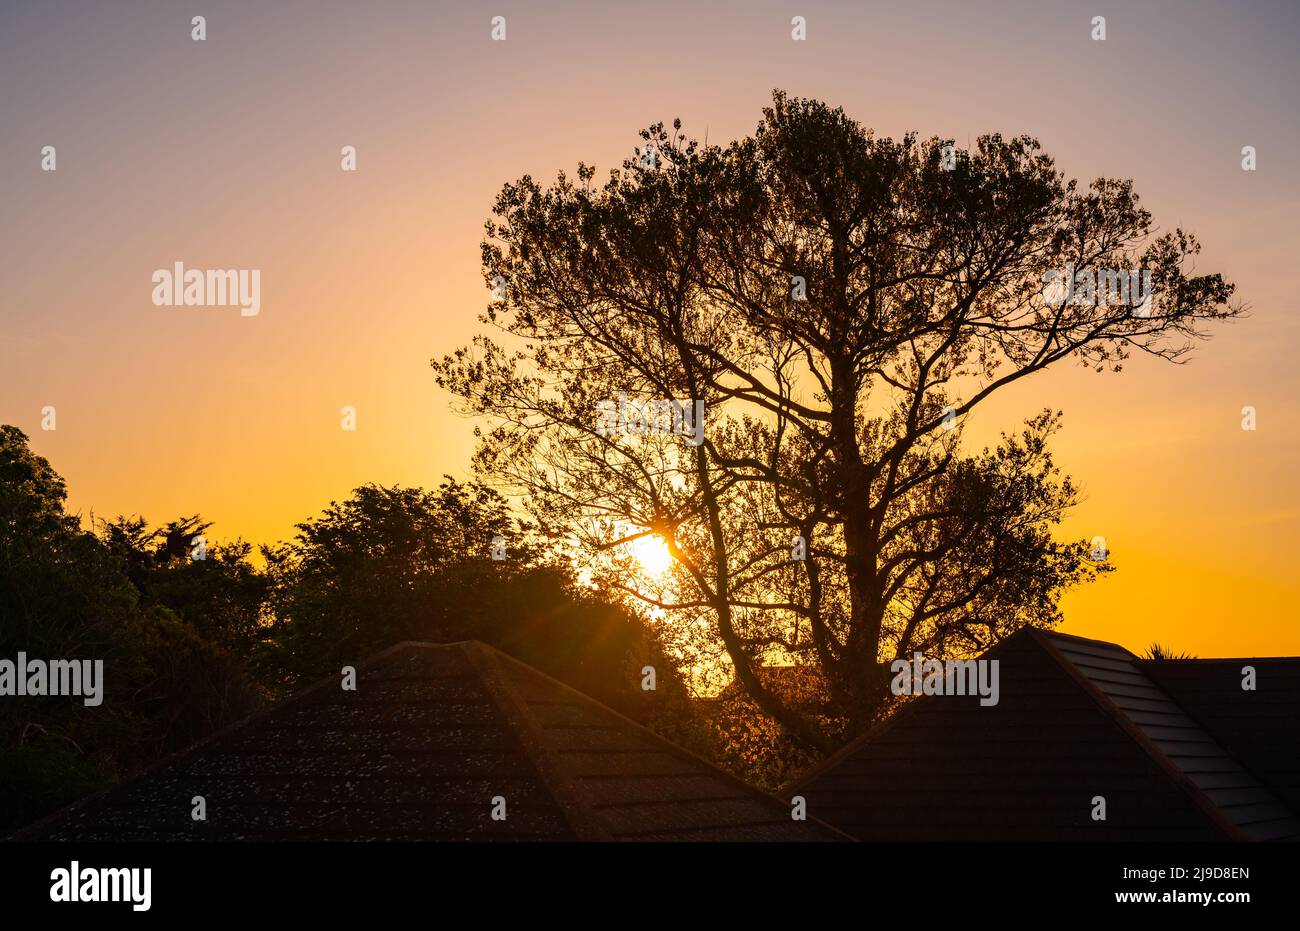 Lever du soleil le matin ou lever du soleil à travers les arbres avec les toits de la maison sur un clair matin de printemps à West Sussex, Angleterre, Royaume-Uni. Lever du soleil au printemps. Banque D'Images